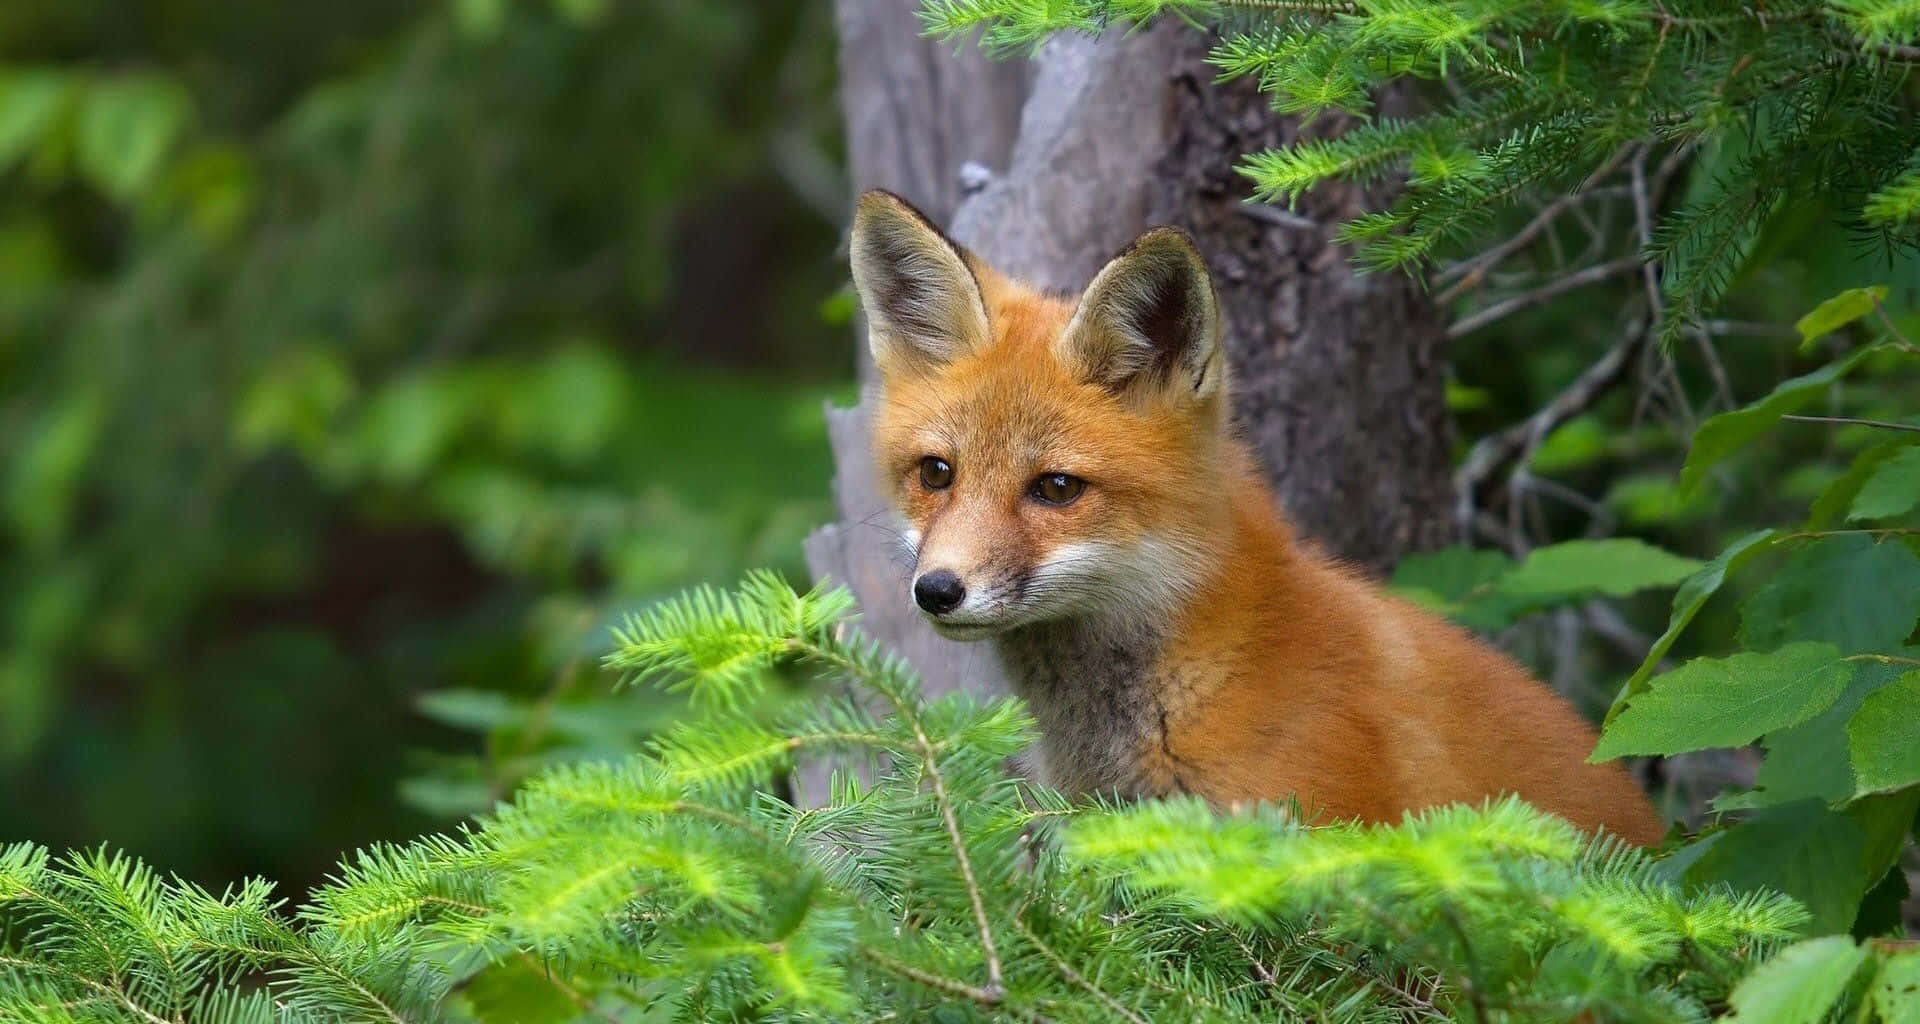 "A Cute Fox Hops Across the Grass"